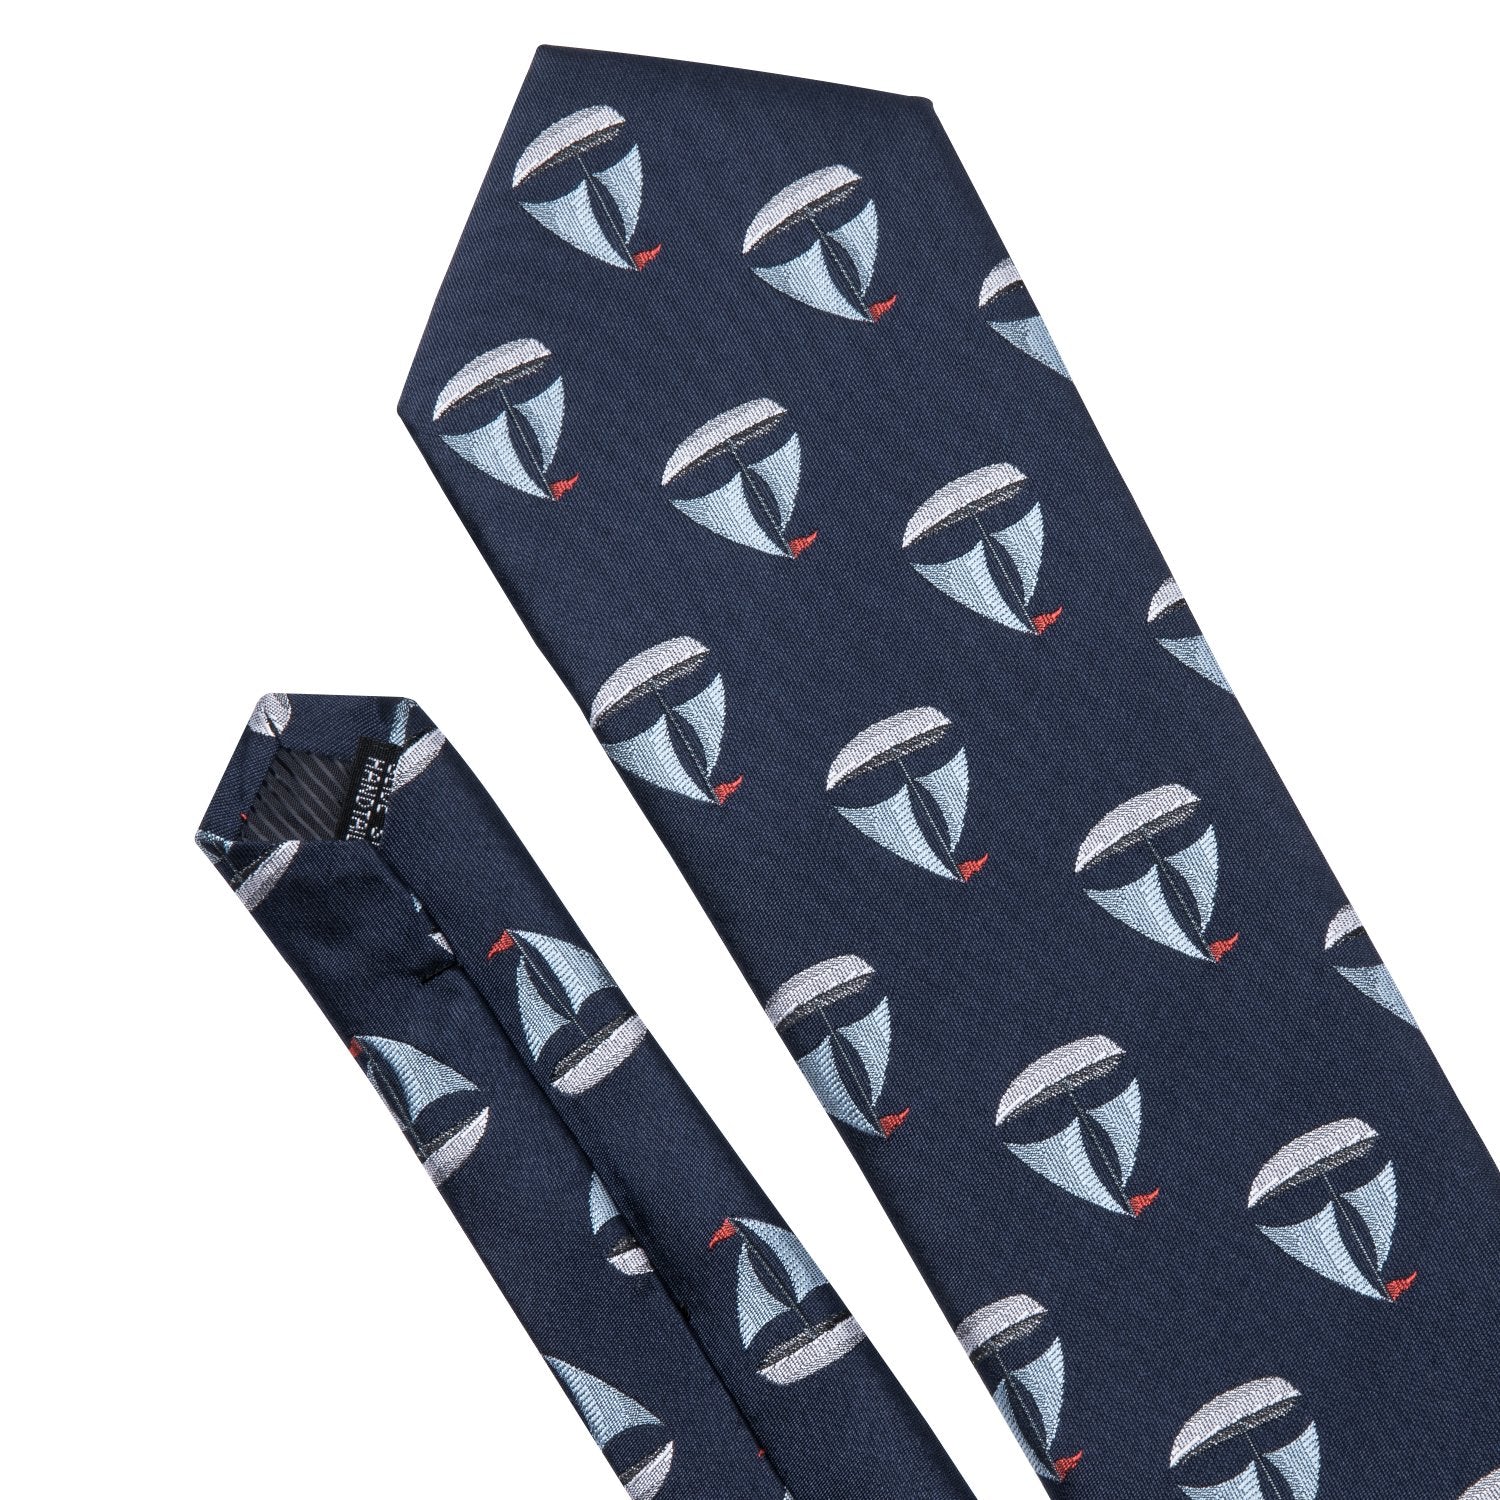 Sailboat Deep Blue Novelty Silk Men's Tie Hanky Cufflinks Set - barry-wang